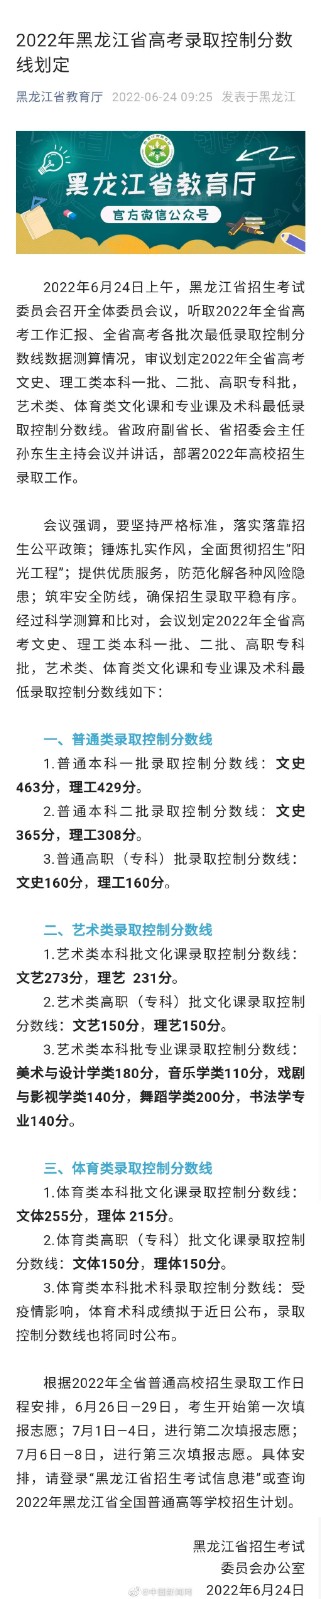 2022黑龙江省高考录取分数线